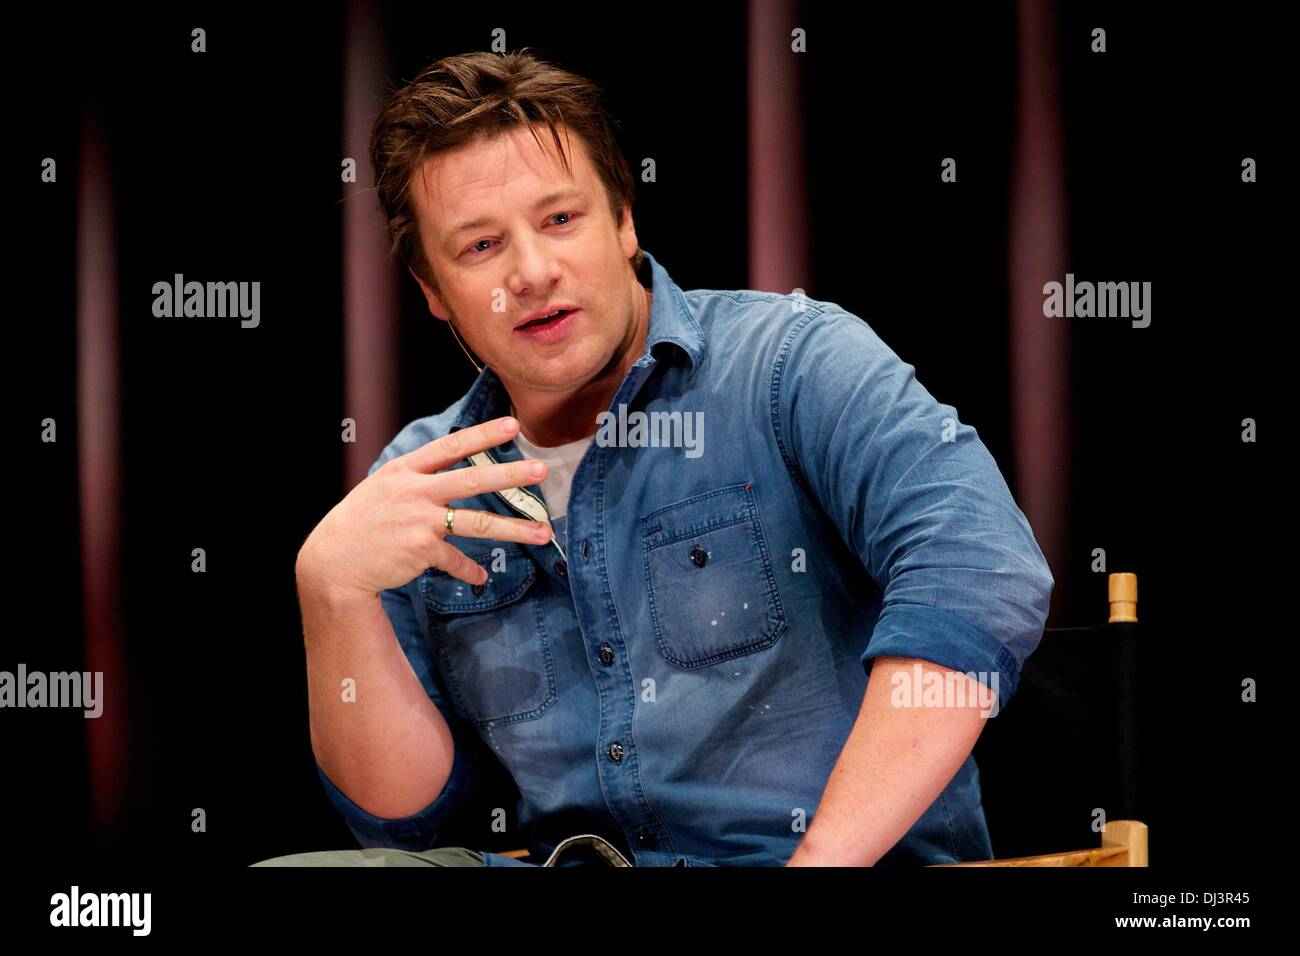 Berlín, Alemania. 20 de noviembre de 2013. Jamie Oliver nos habla de su campaña de educación alimentaria global y cómo Alemania puede desempeñar un papel clave en ayudar a propagar la revolución alimentaria en Apple Store en Berlín. Crédito: dpa picture alliance/Alamy Live News Foto de stock